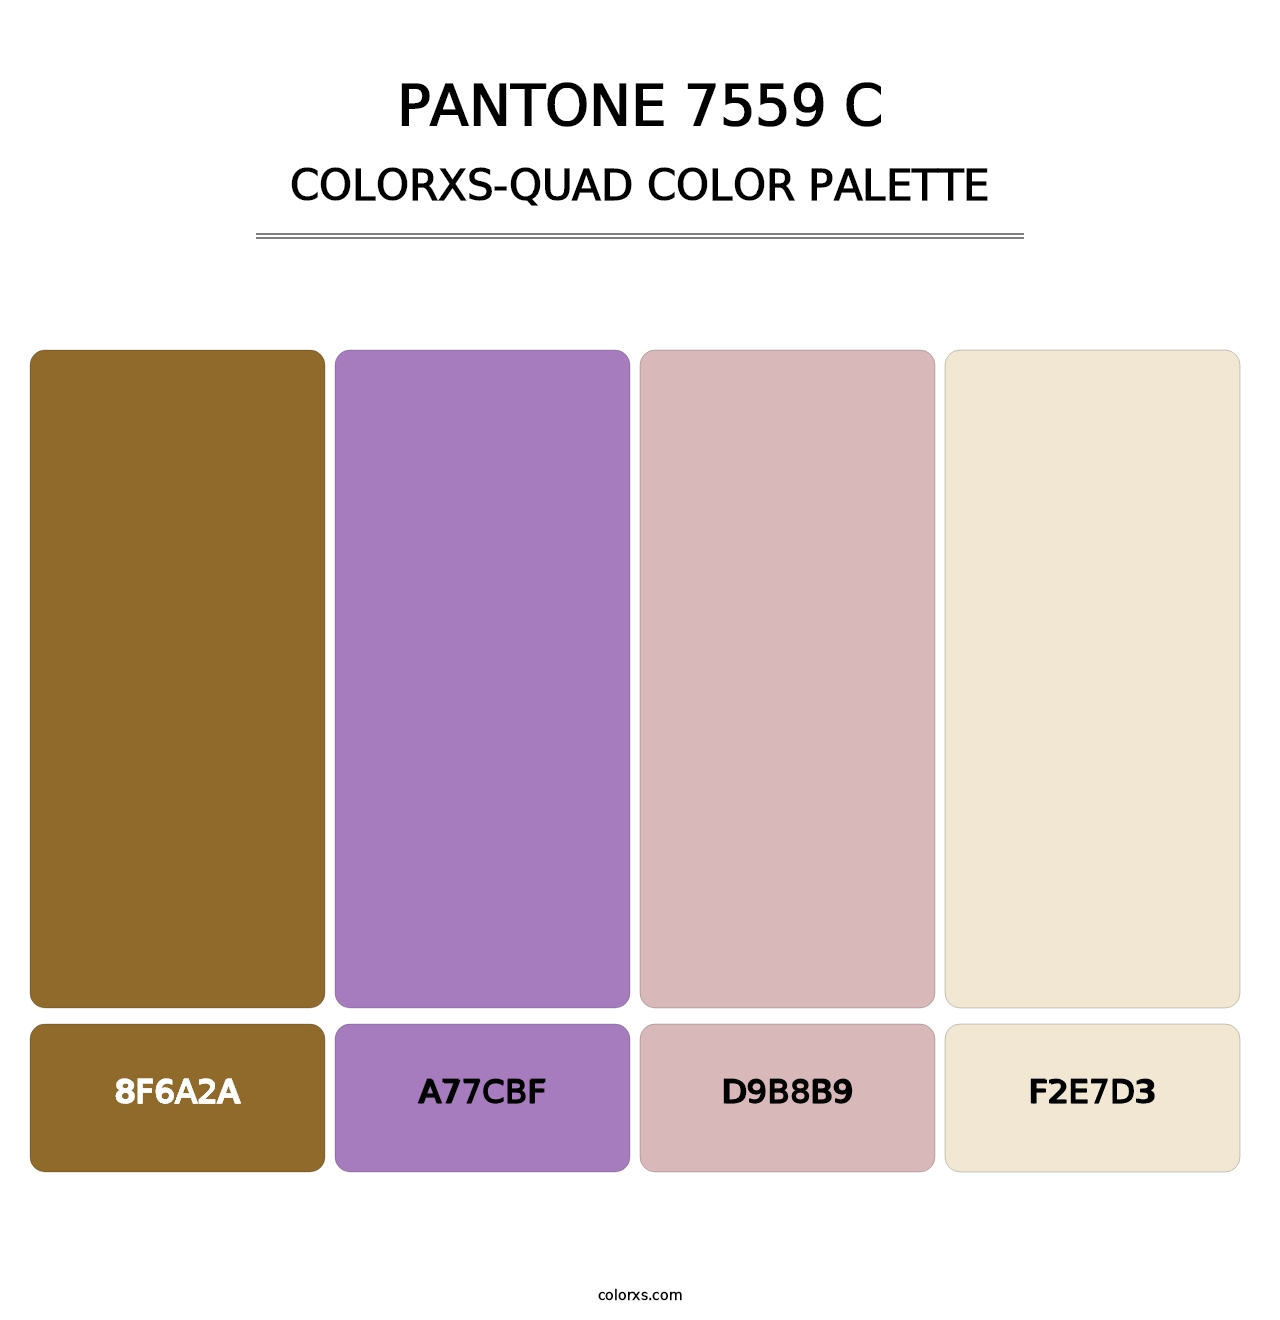 PANTONE 7559 C - Colorxs Quad Palette